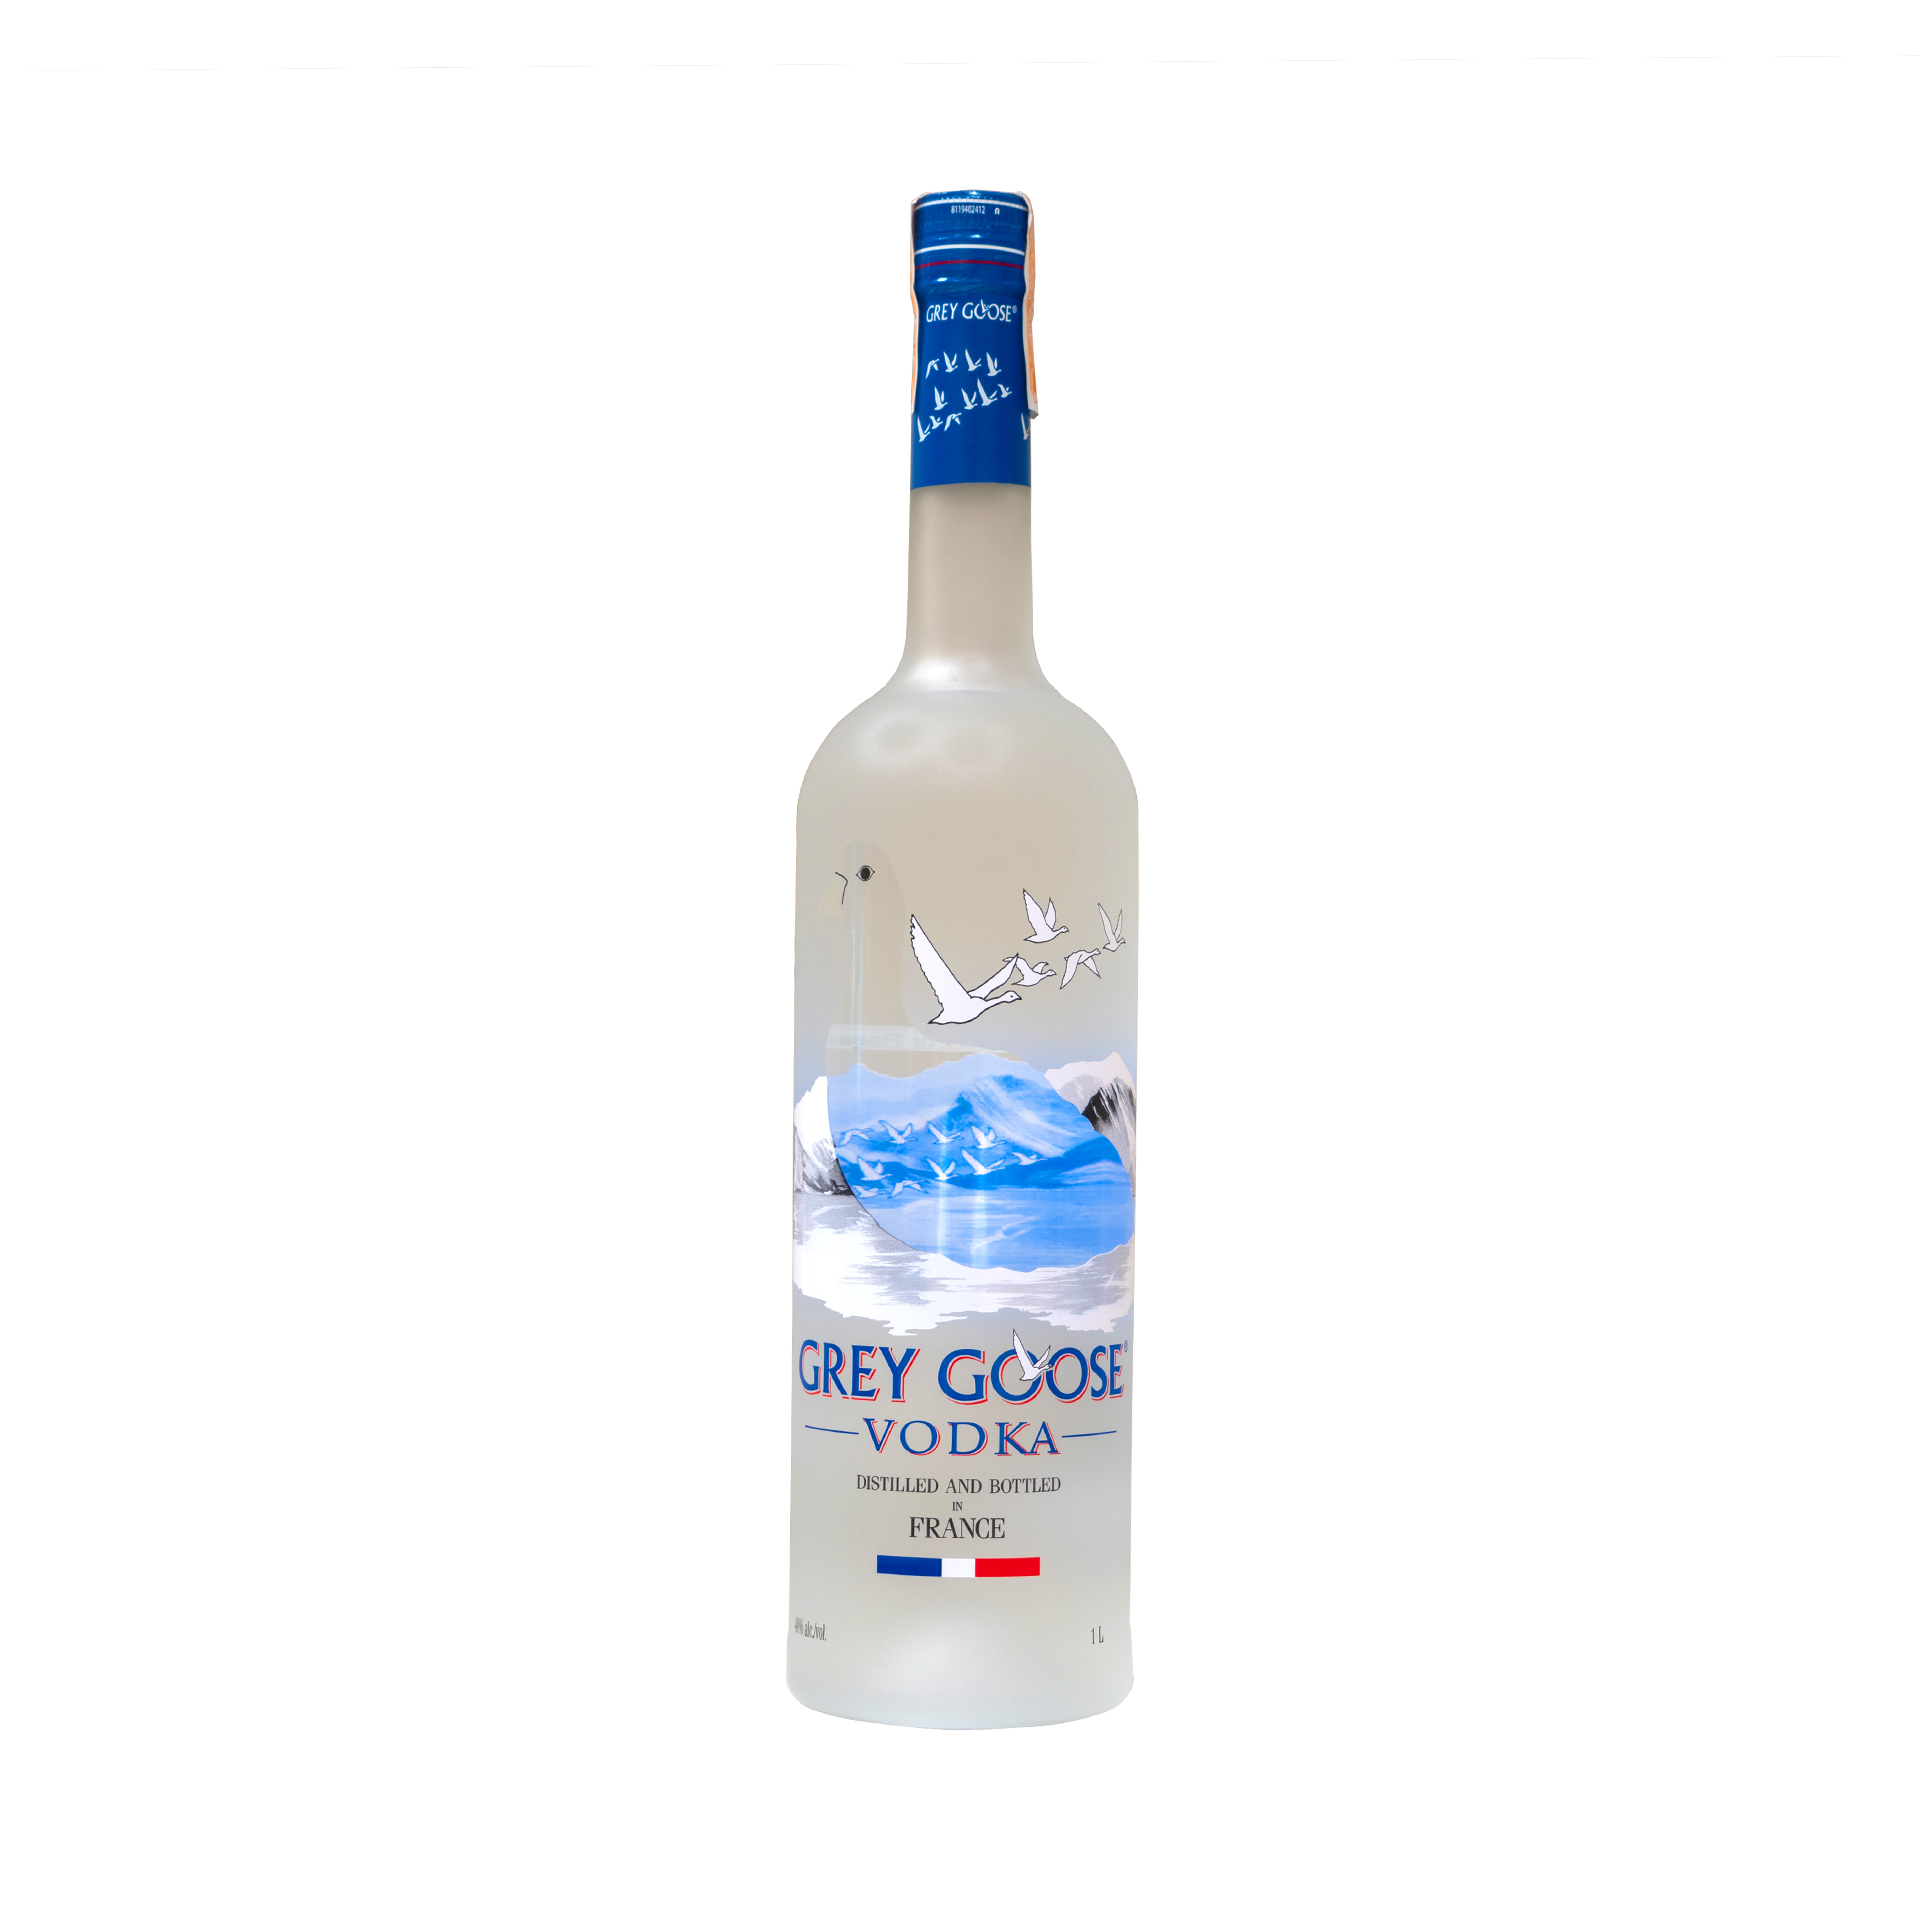 Grey goose vodka (1L)